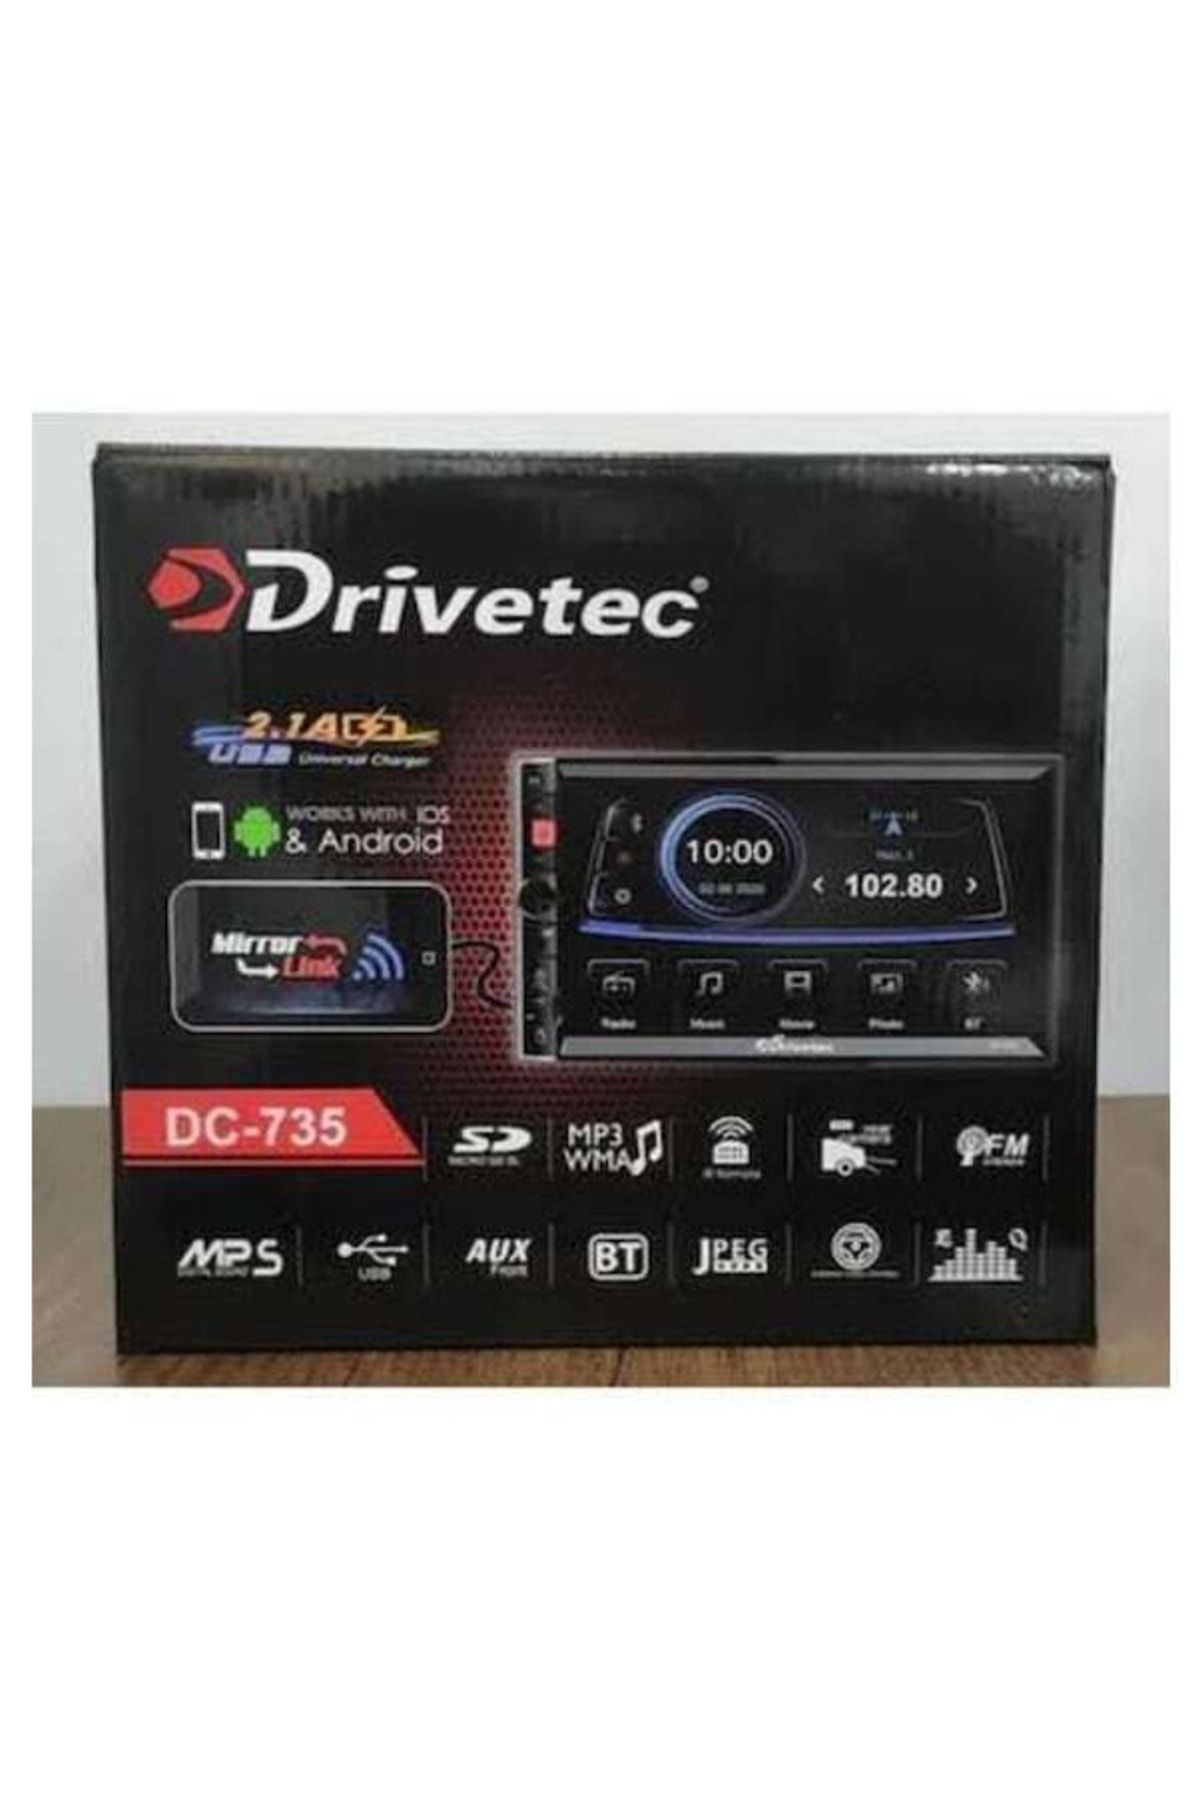 Drivetec Dc-735 7 Inç Çi?ft Usbli? Double Teyp + Kamera Xv Sound